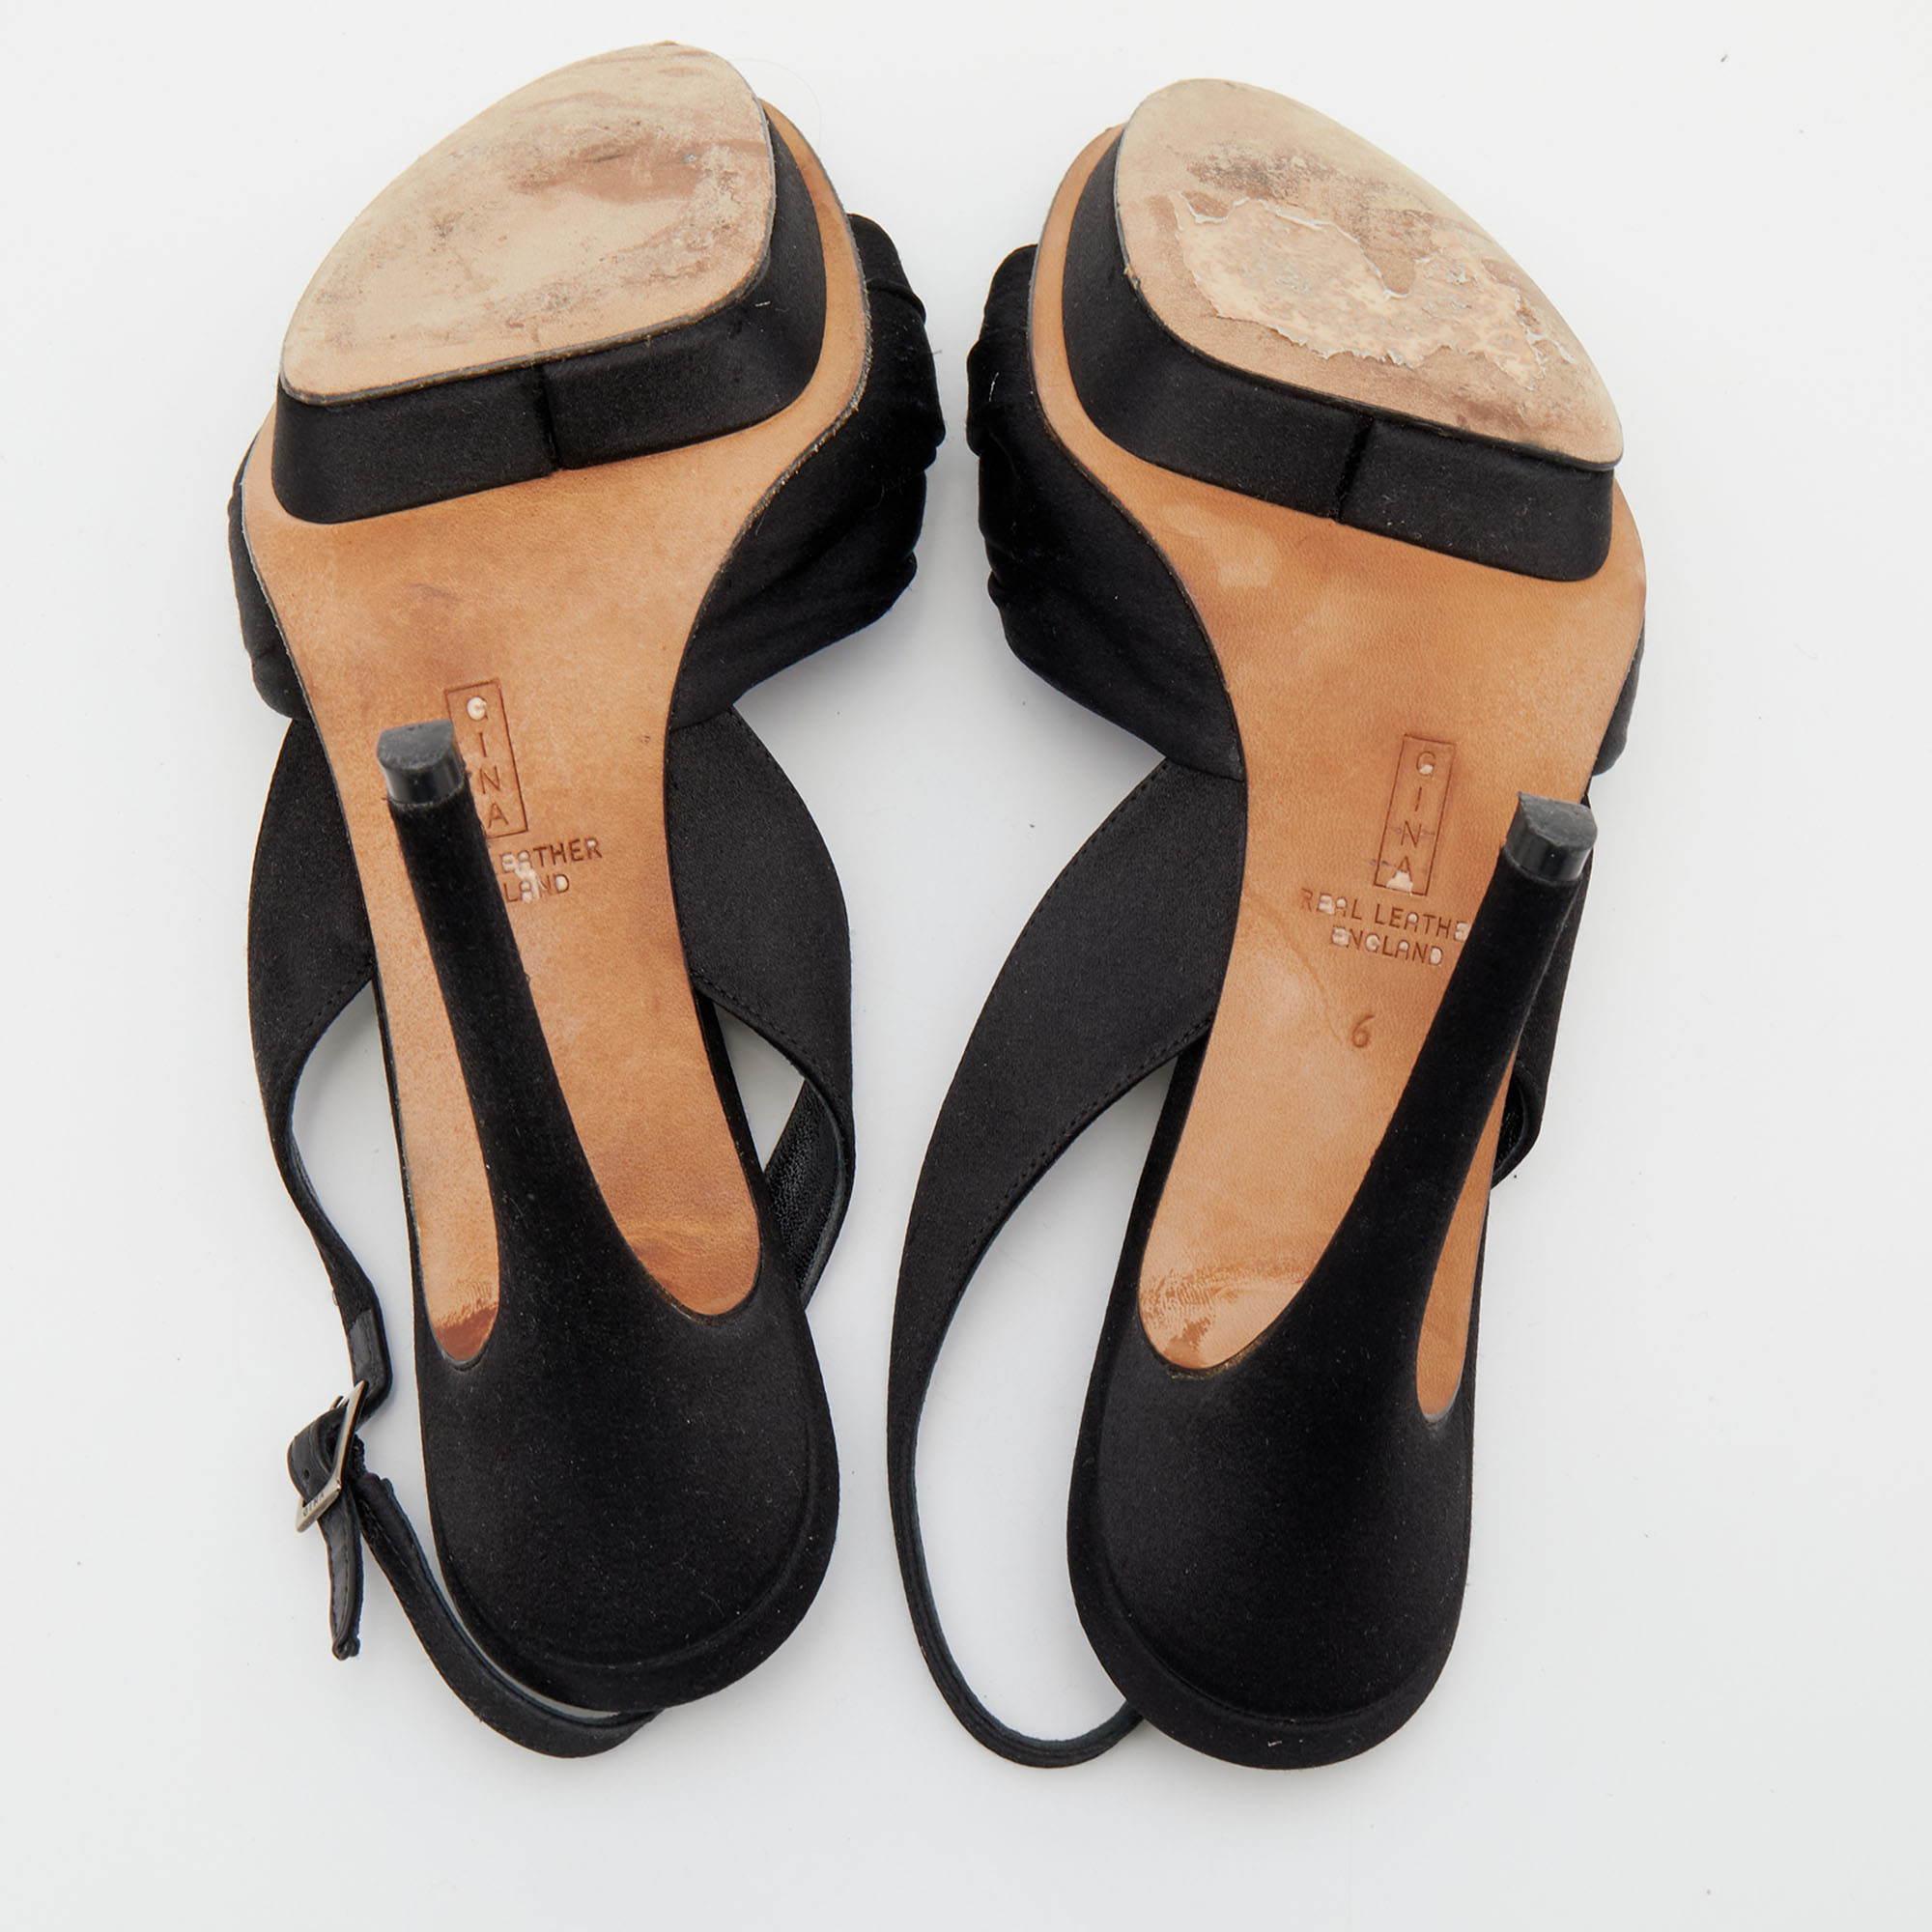 Gina Black Satin Crystal Embellished Slingback Sandals Size 39